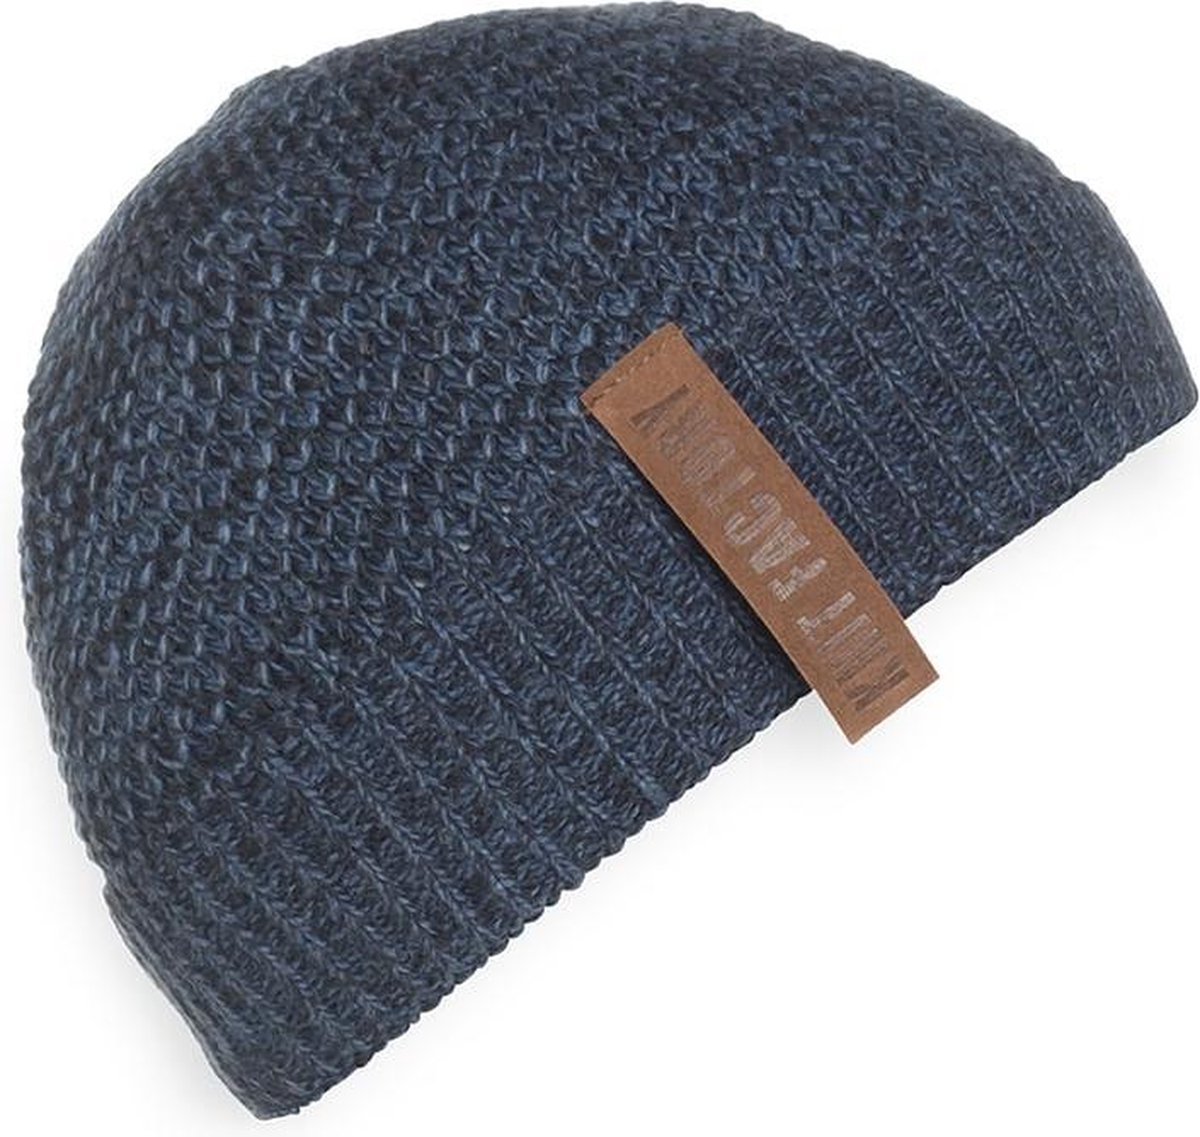 Knit Factory Jazz Gebreide Muts Heren & Dames - Beanie hat - Jeans/Navy - Warme blauw gemêleerde Wintermuts - Unisex - One Size